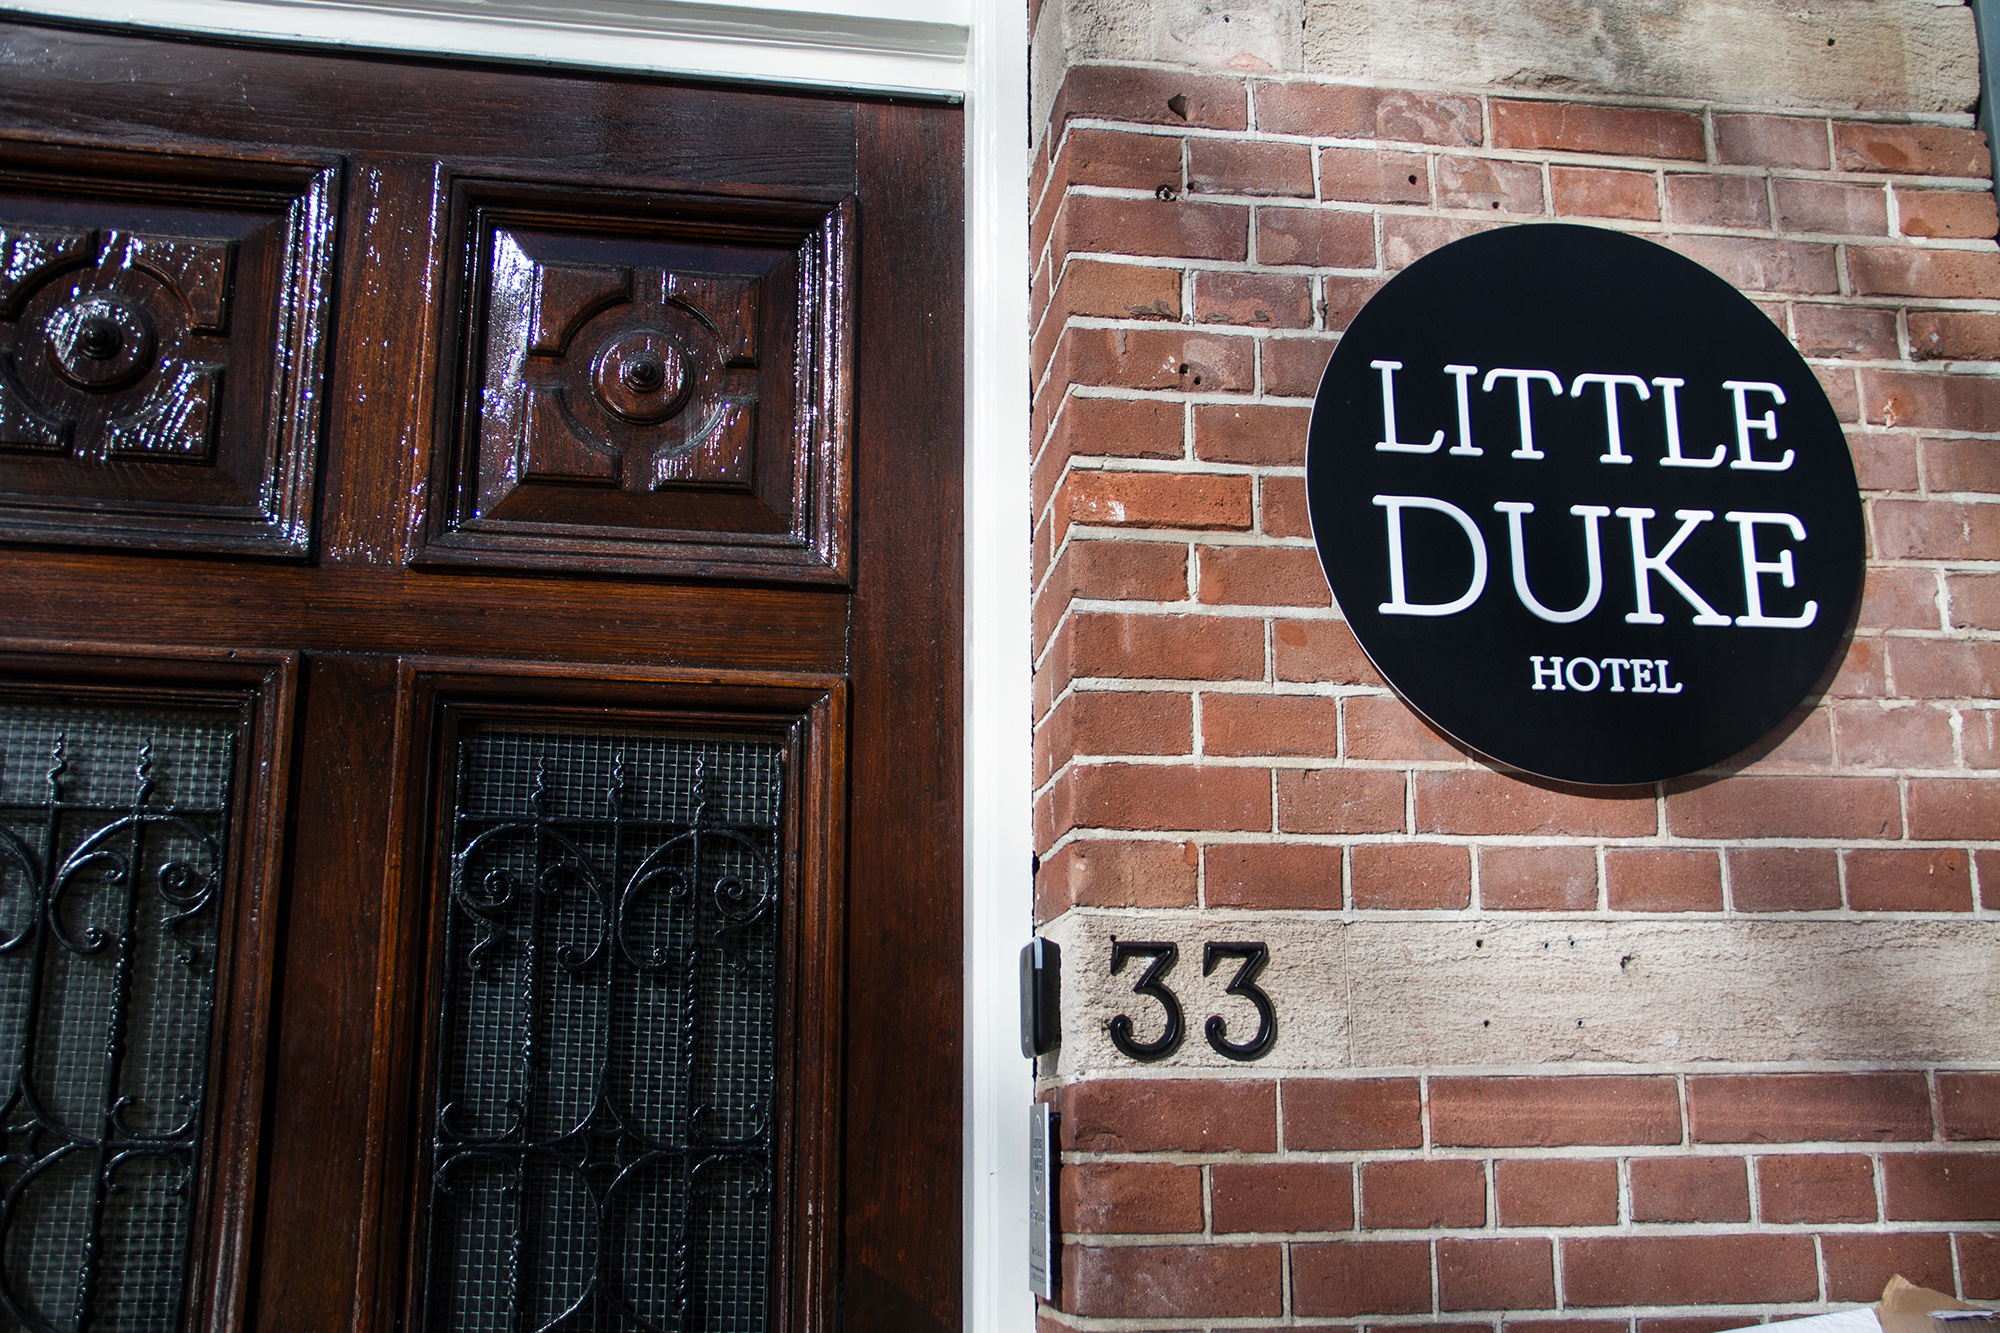 The Little Duke Hotel